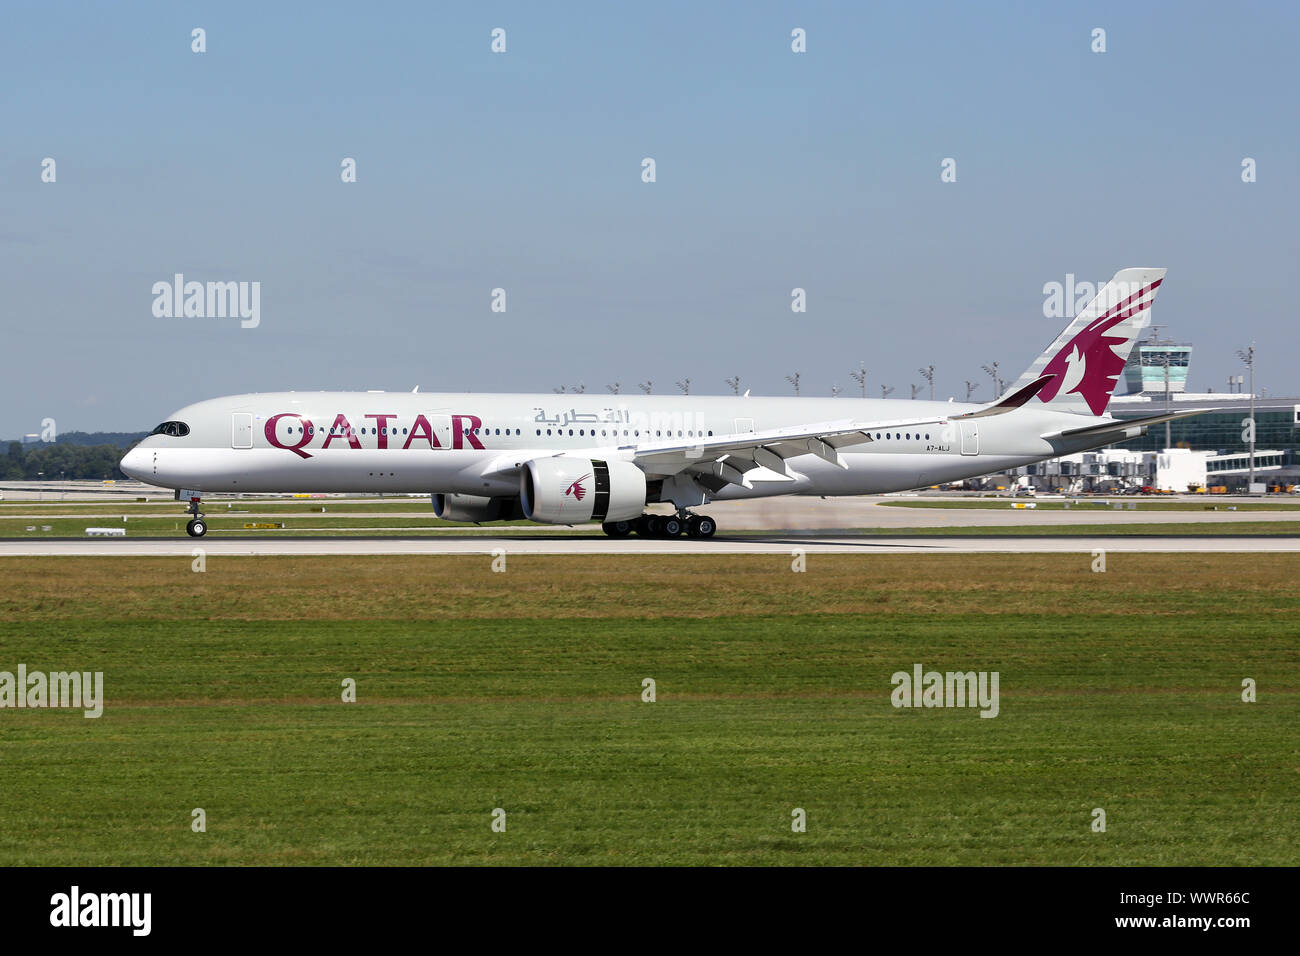 Qatar Airways Airbus A350-900 Aircraft Stock Photo